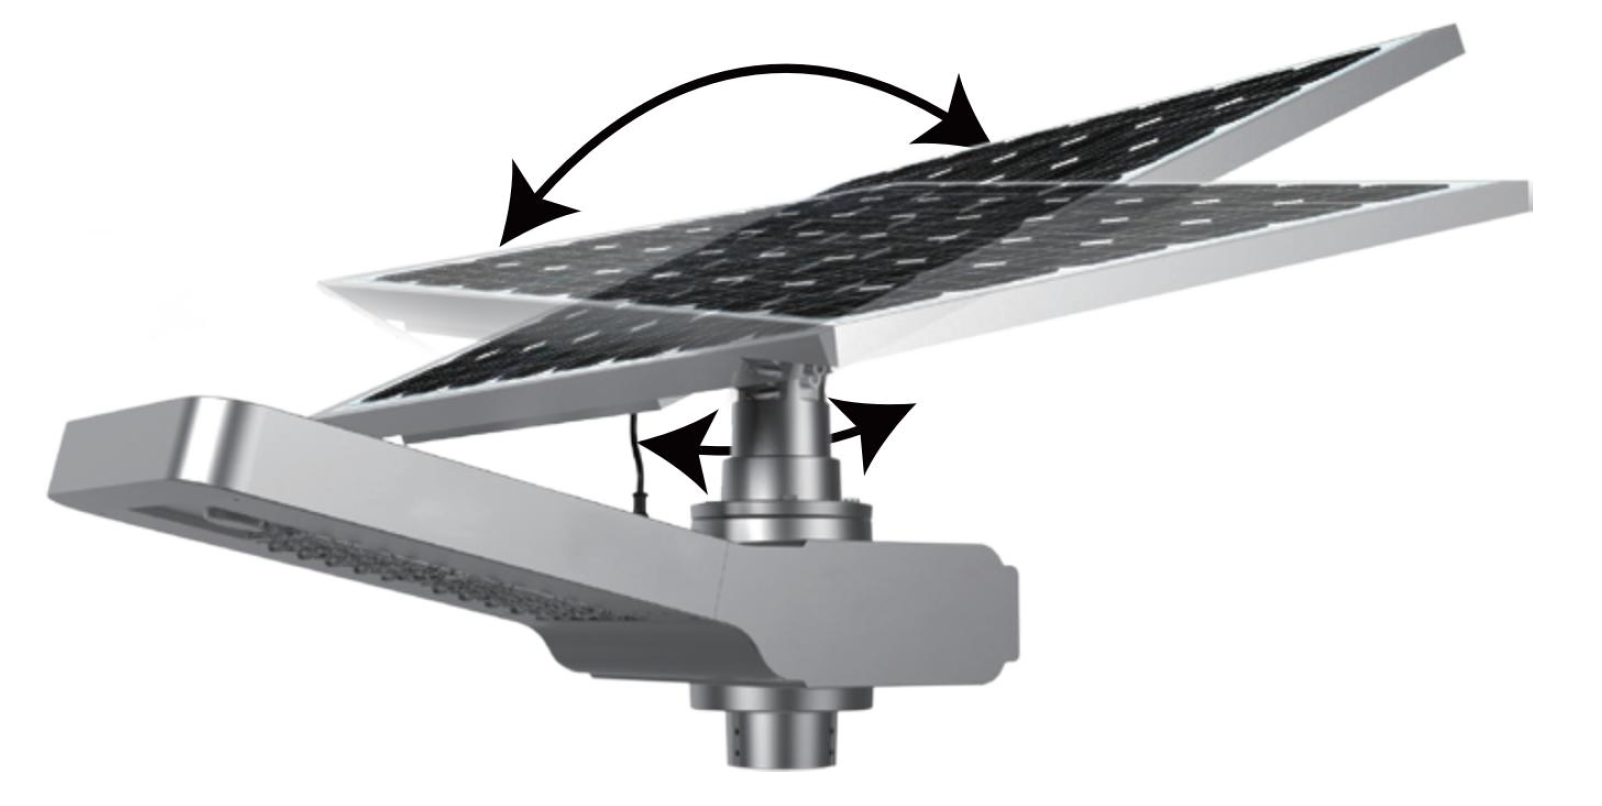 Lampadaire solaire autonome SSL-30 - panneau de 250W - Lampe de 30W